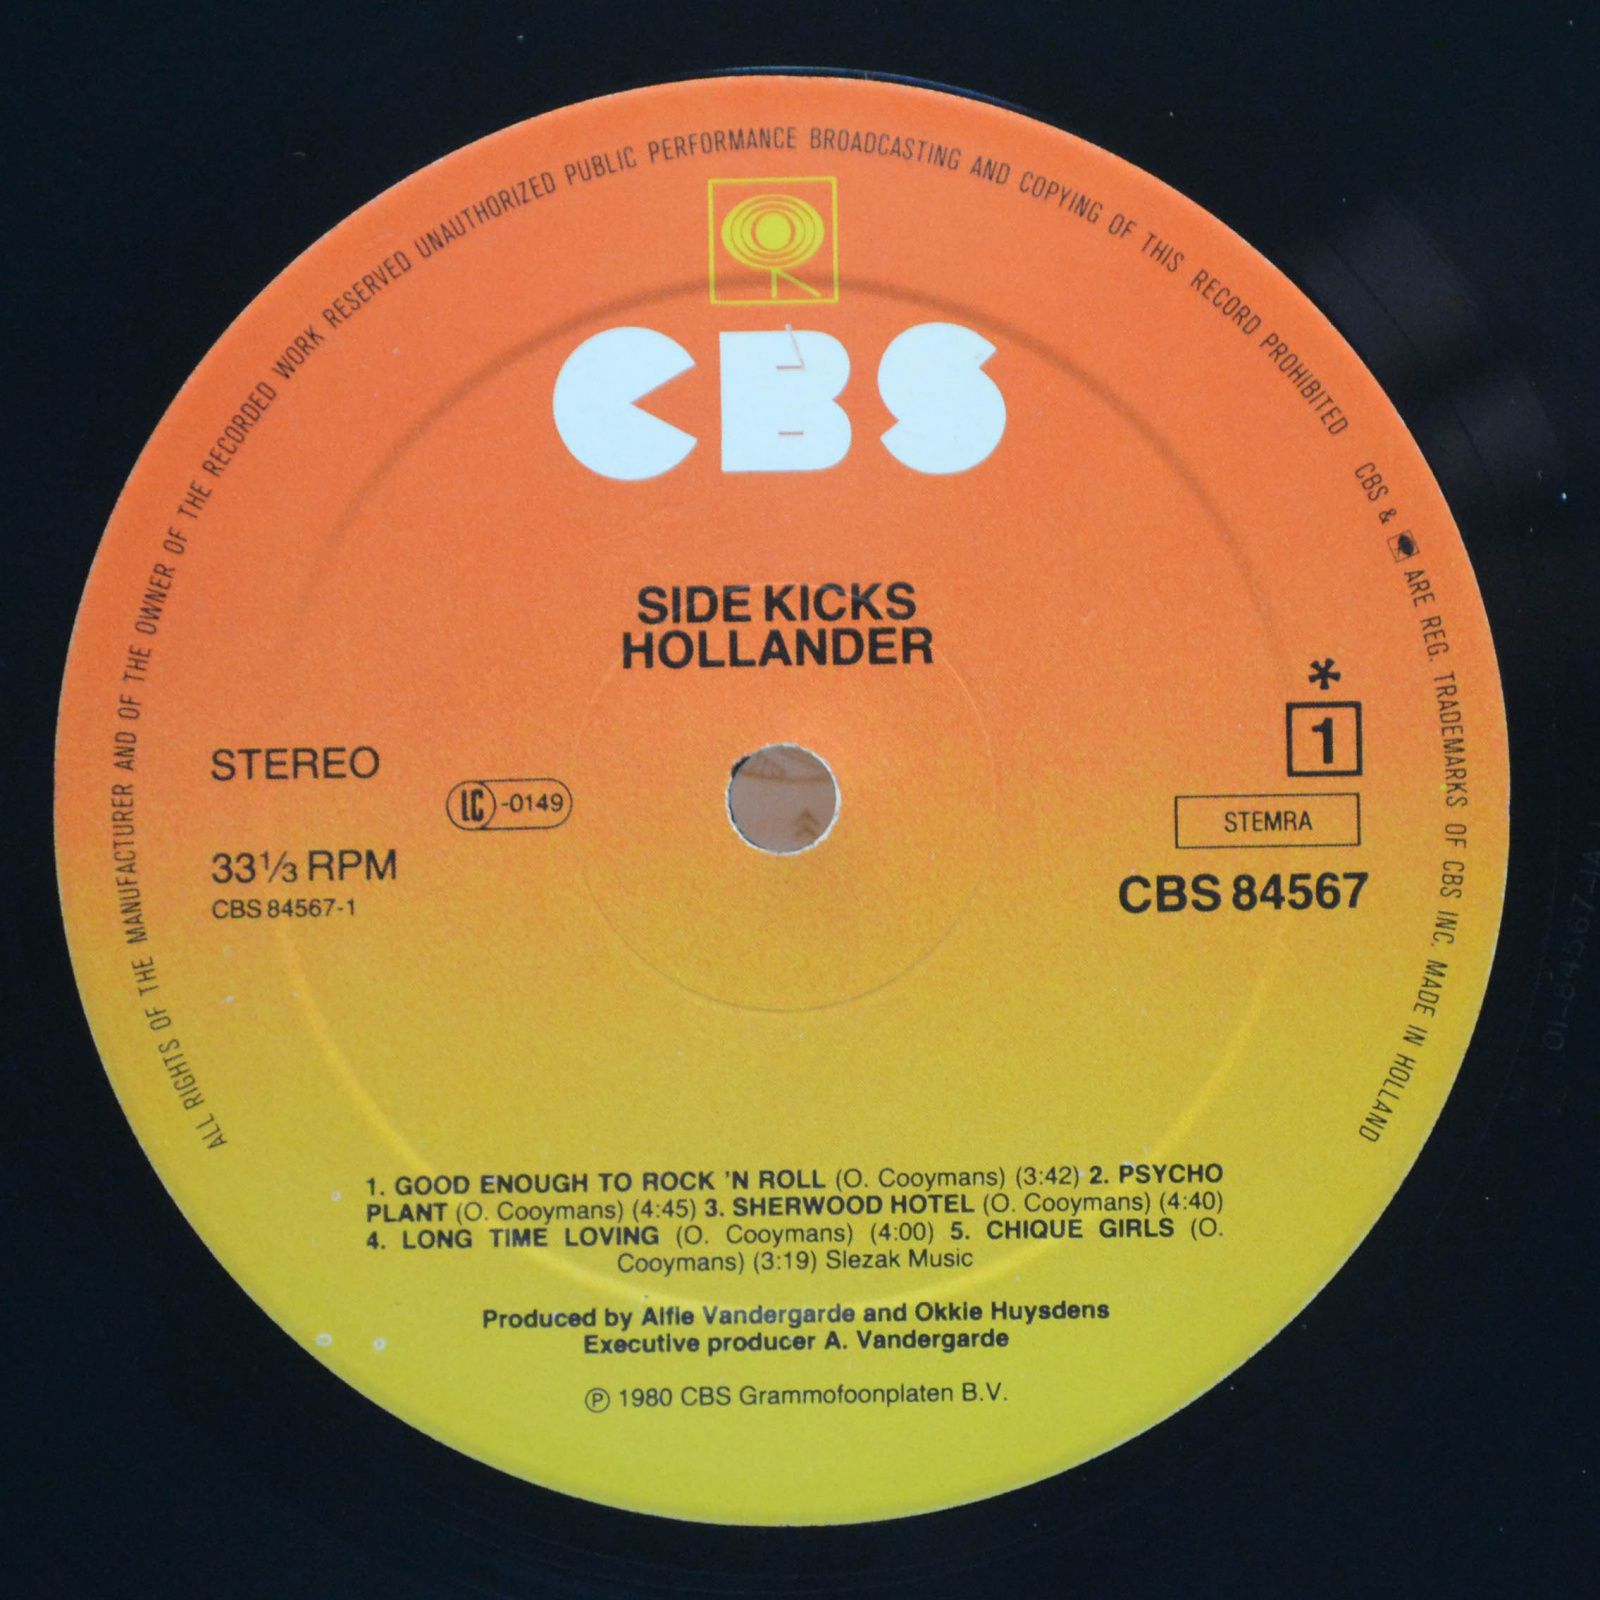 Hollander — Side Kicks, 1980